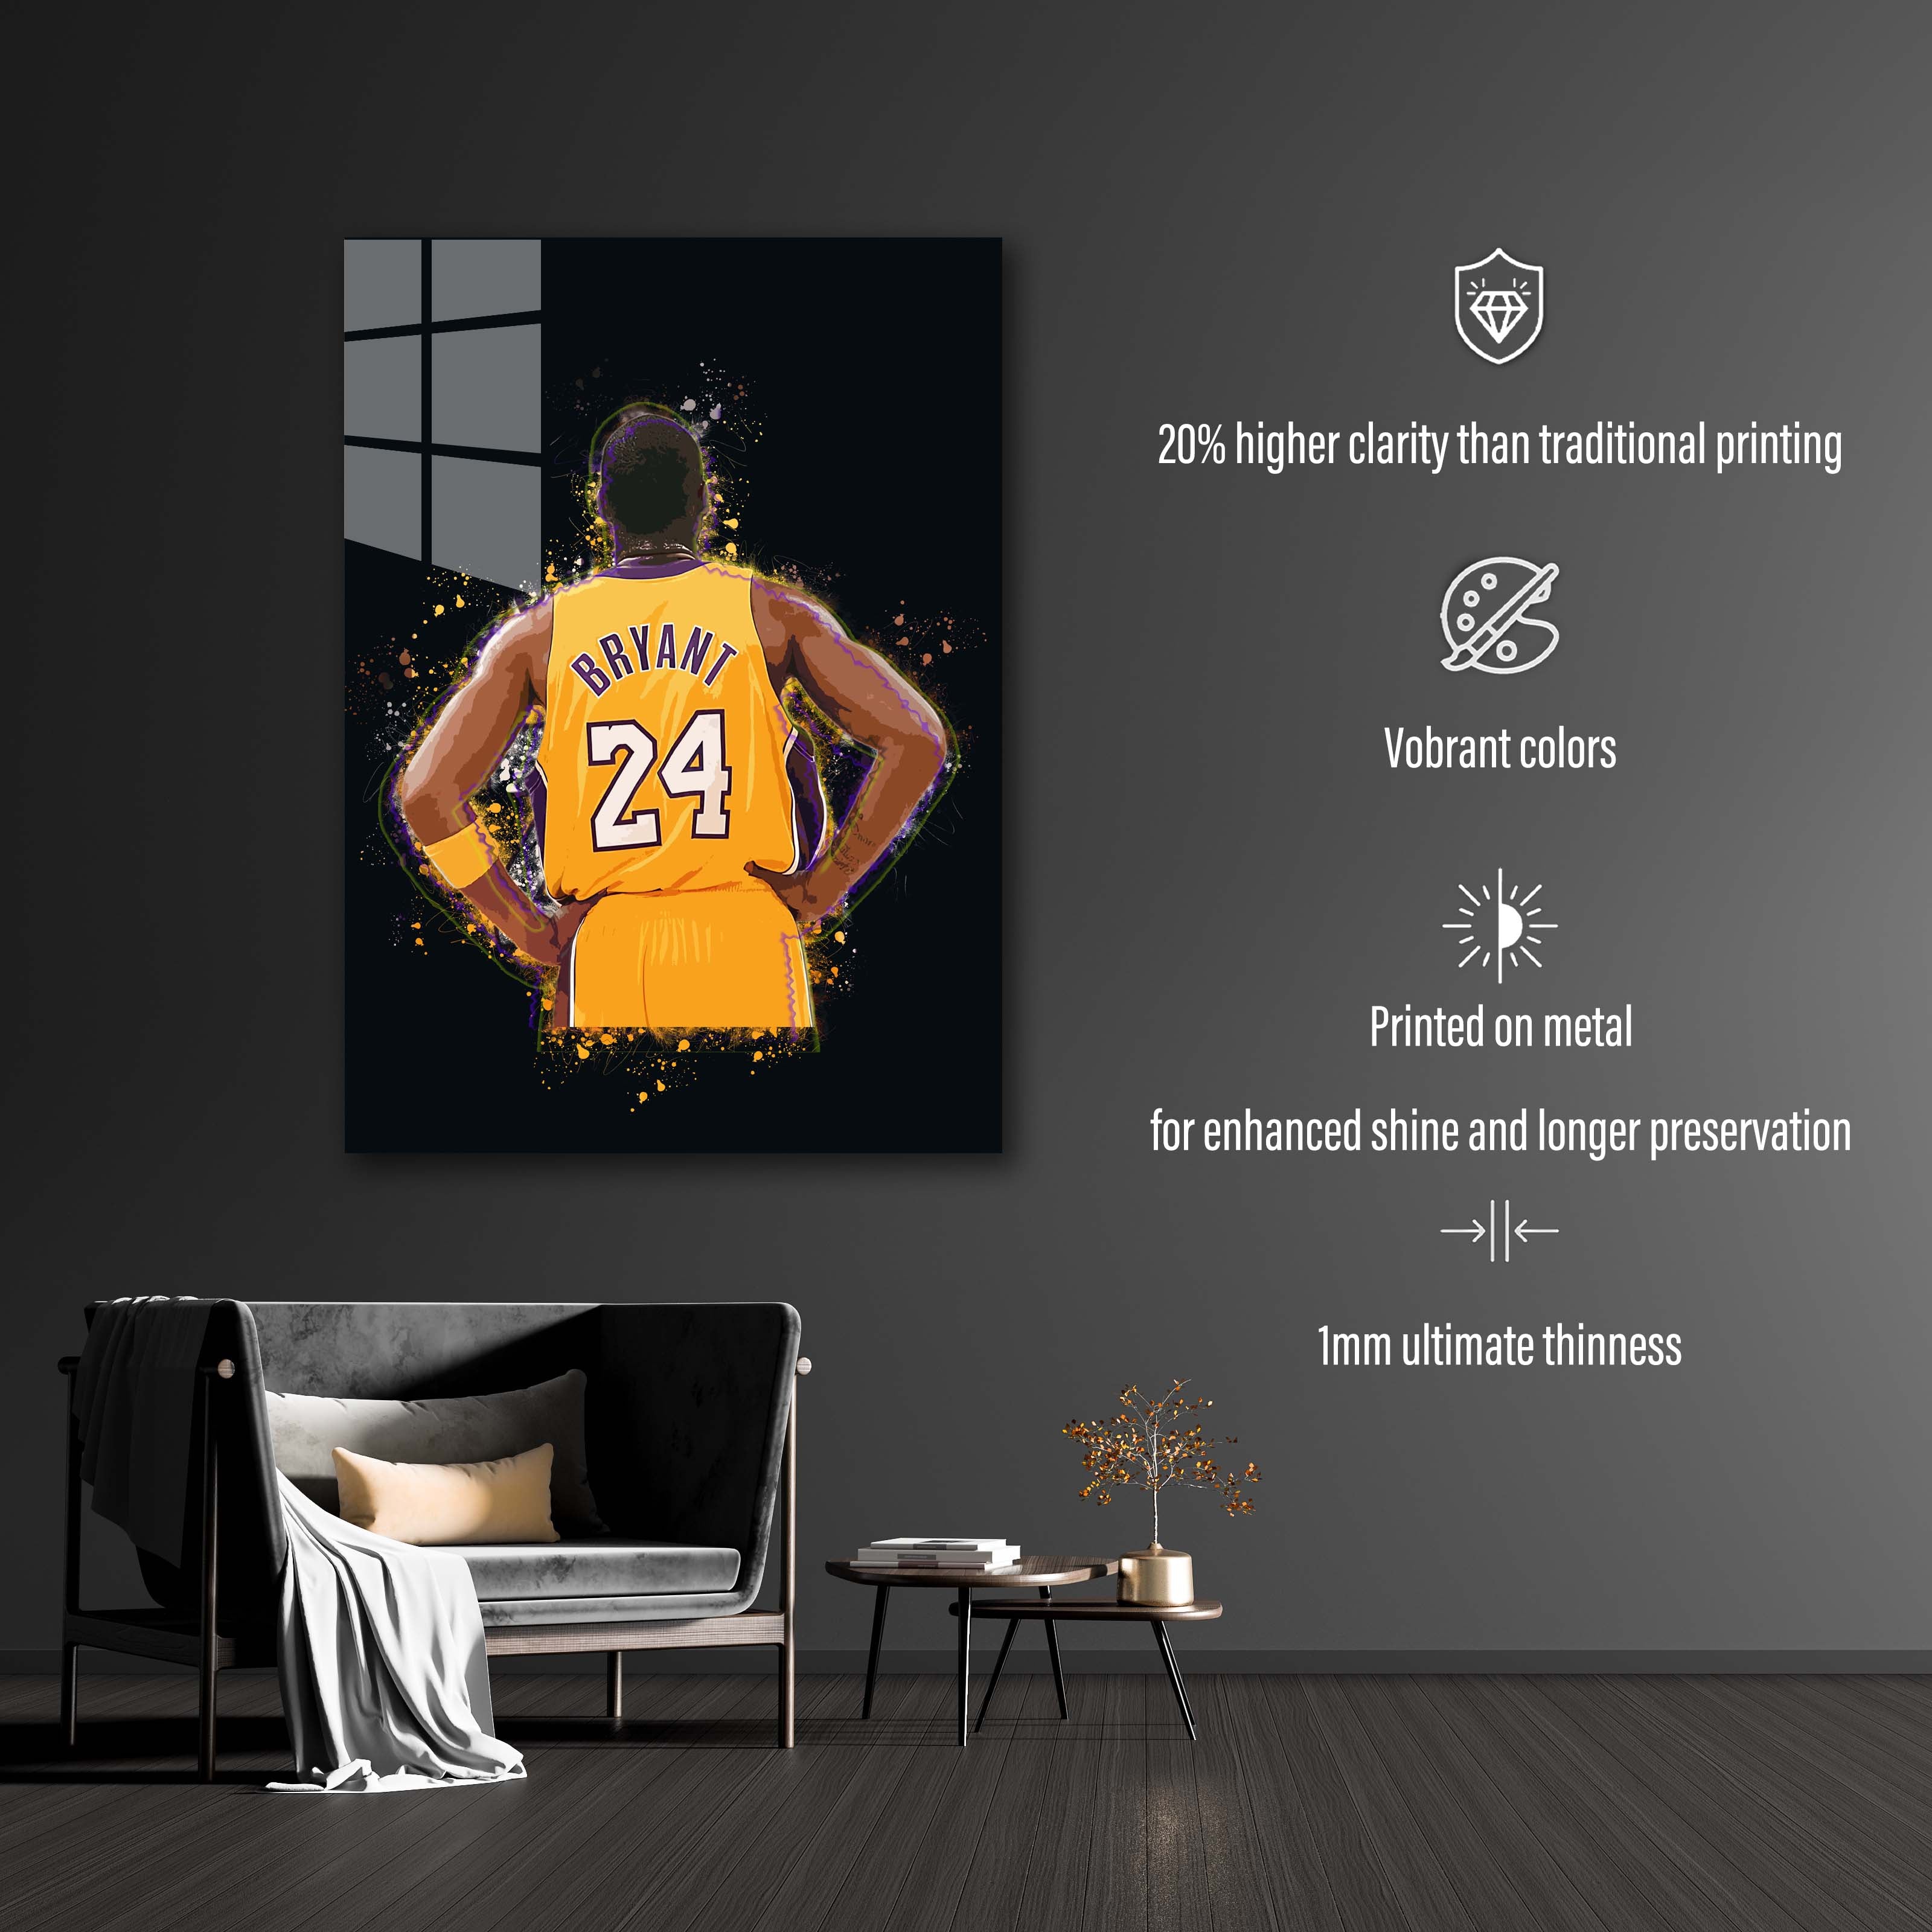 Kobe-designed by @rizal.az